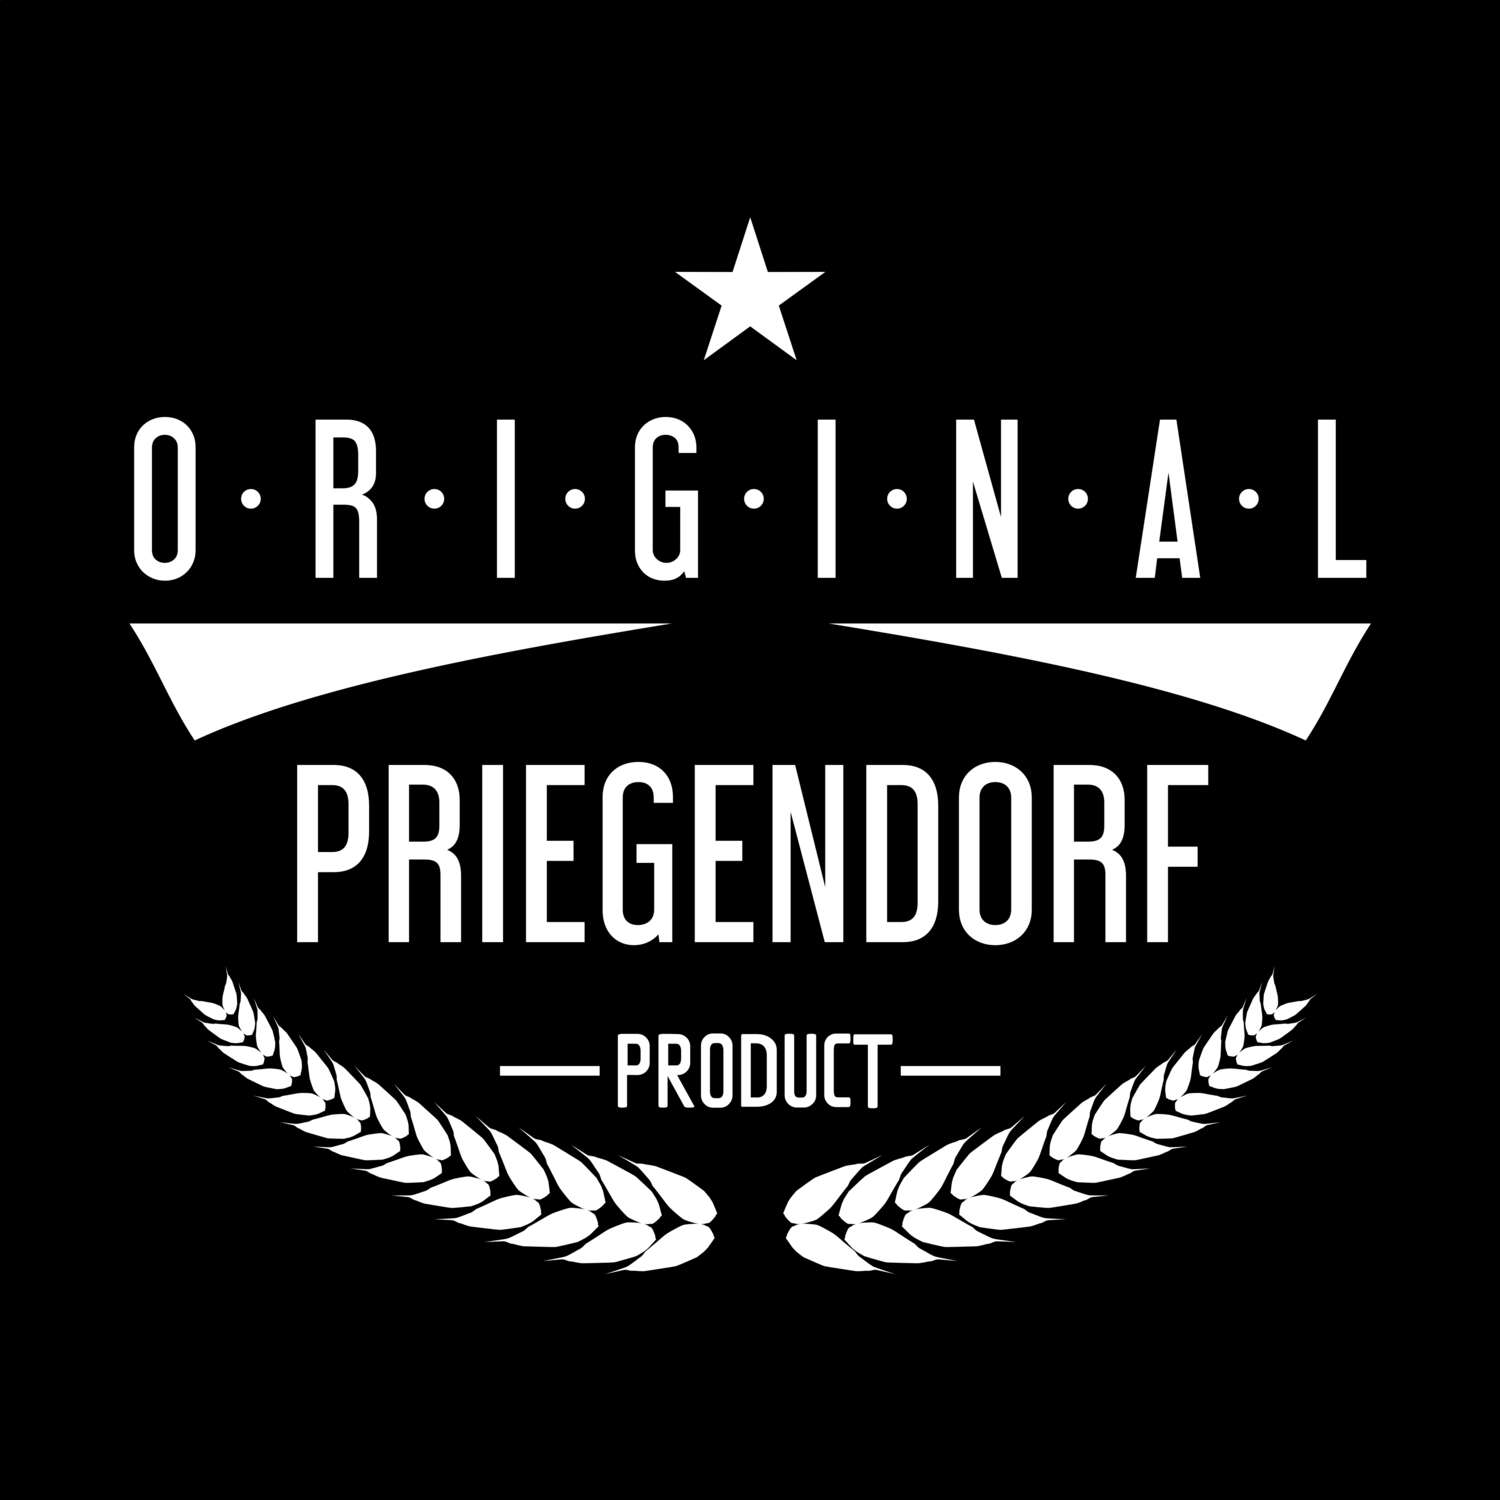 Priegendorf T-Shirt »Original Product«